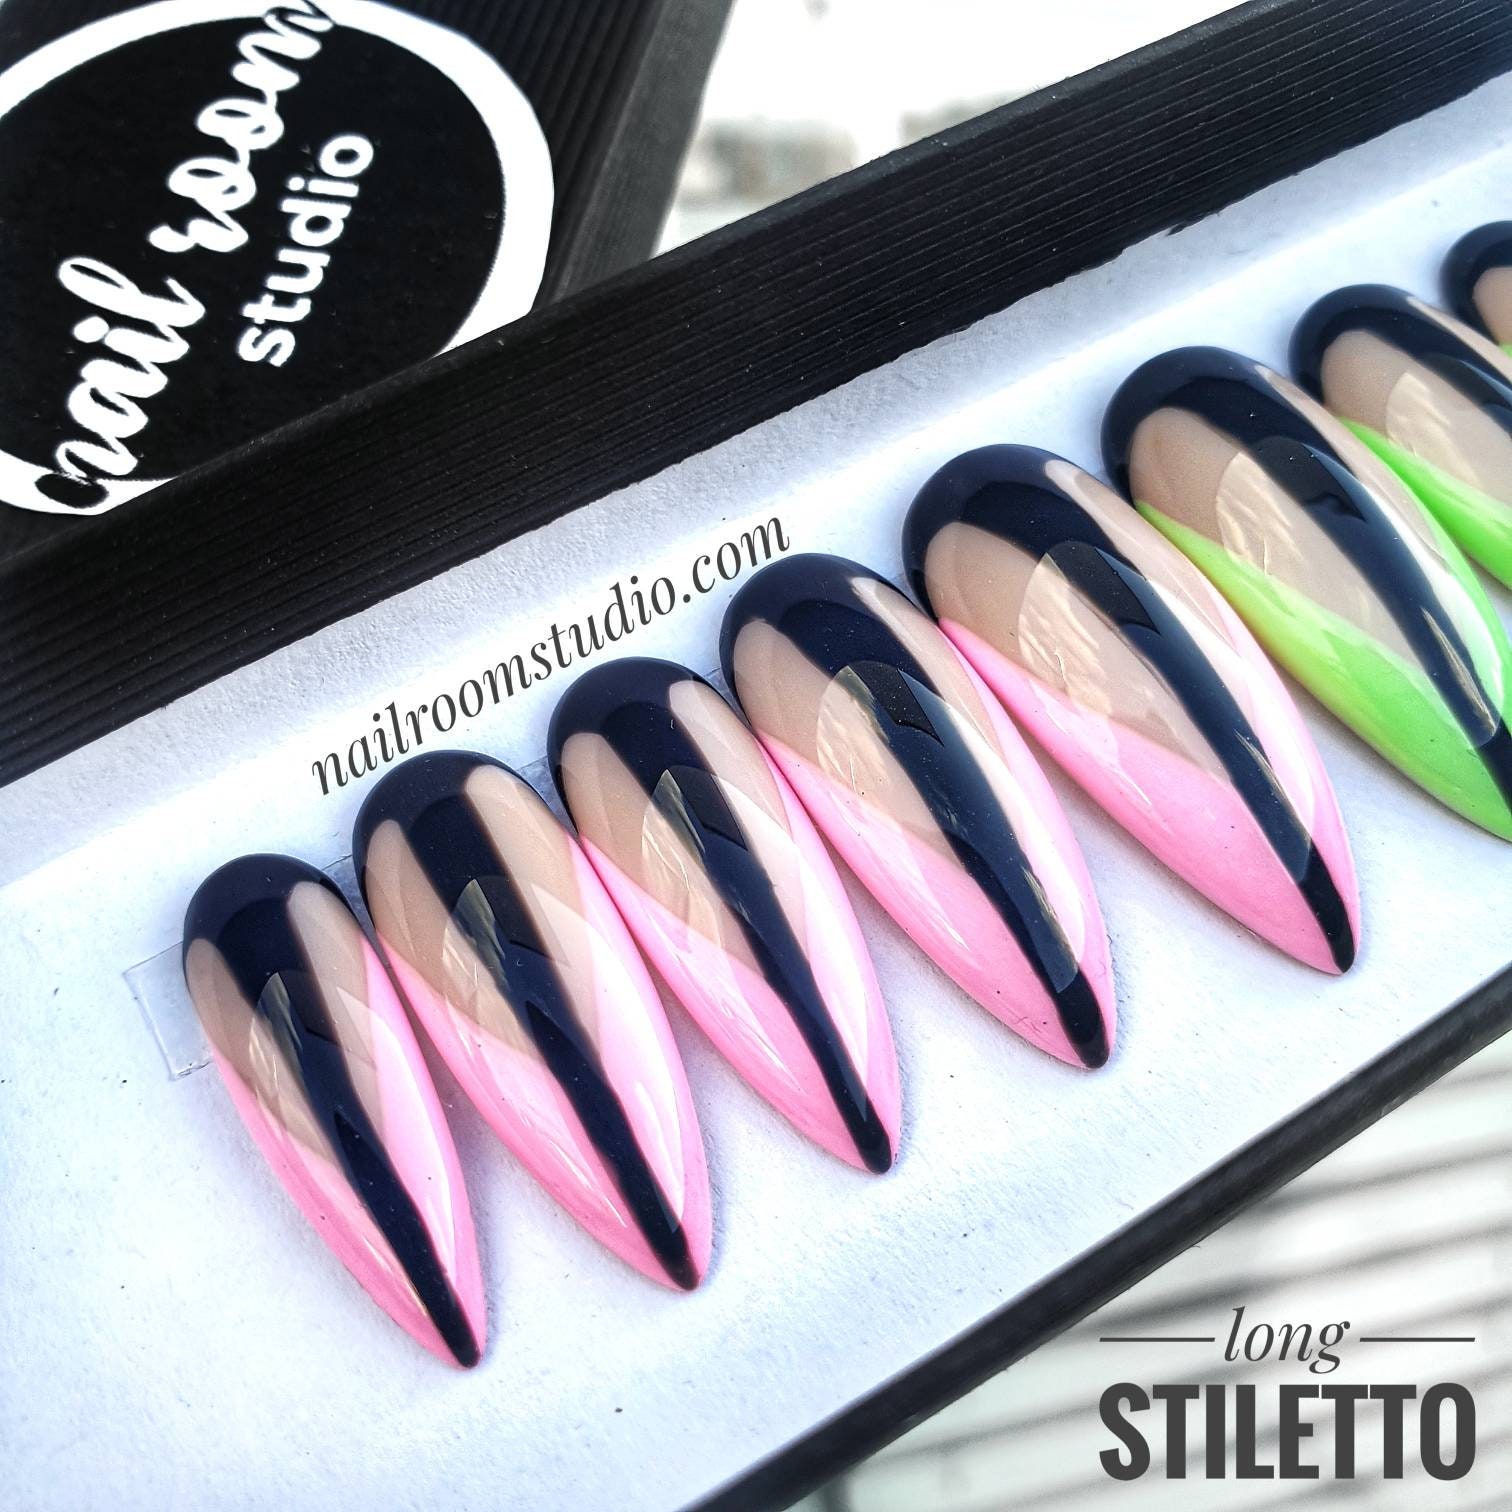 10 custom french gel polish press on nails neon pastels | Etsy